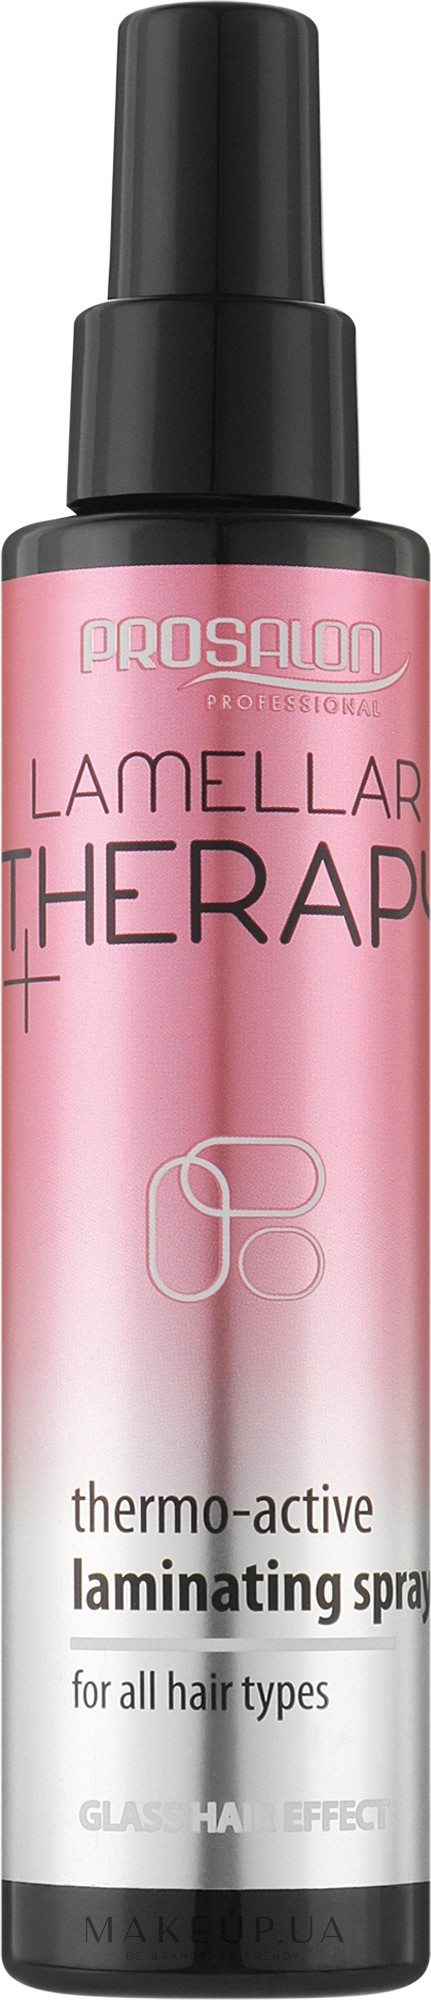 Термоактивний ламінувальний спрей для волосся - Prosalon Lamellar Therapy+ Thermo-Active Laminating Spray — фото 150ml